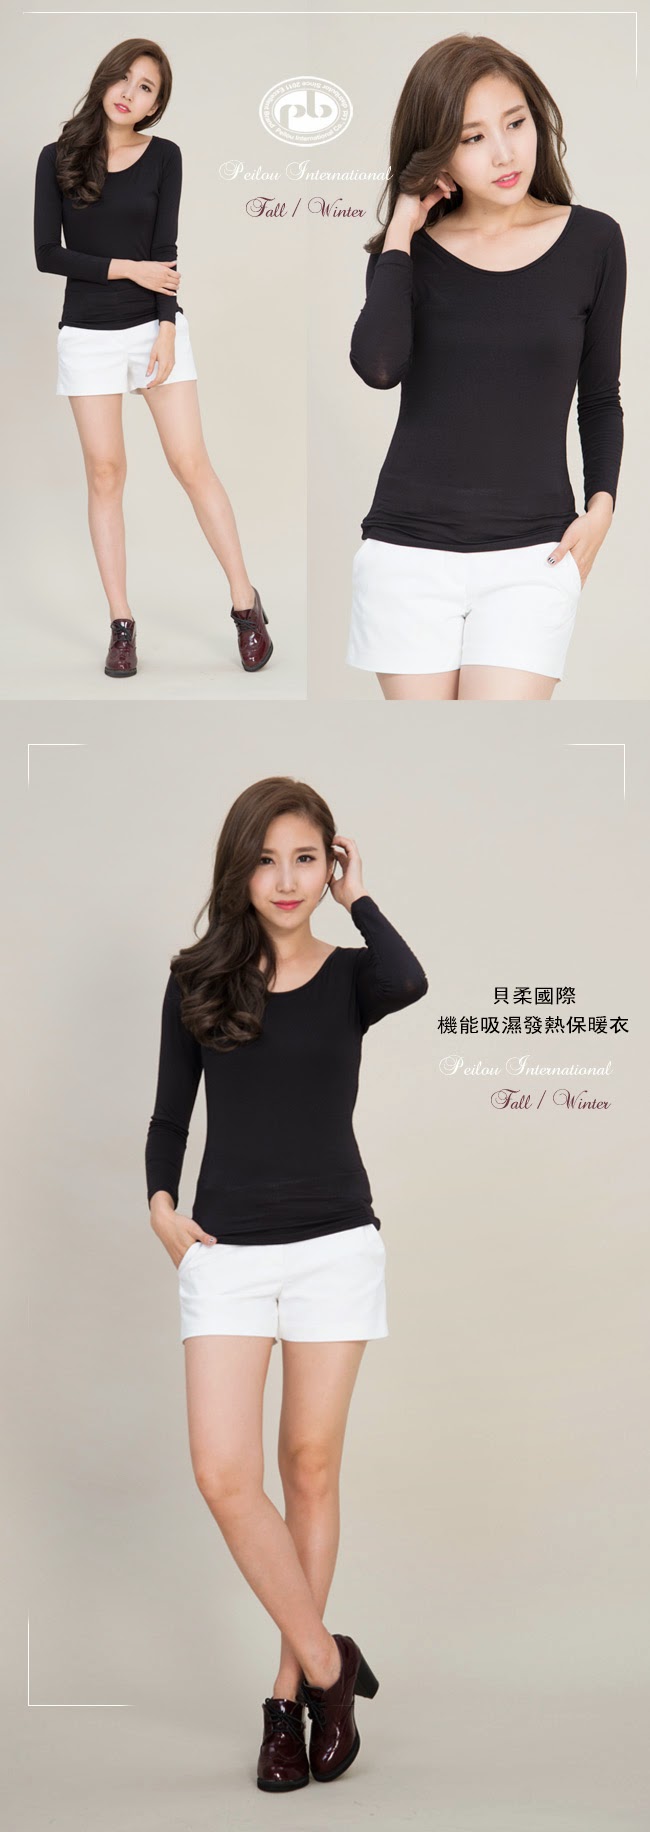 貝柔國際-機能吸濕發熱保暖衣(女大圓領-黑色) 台灣製造